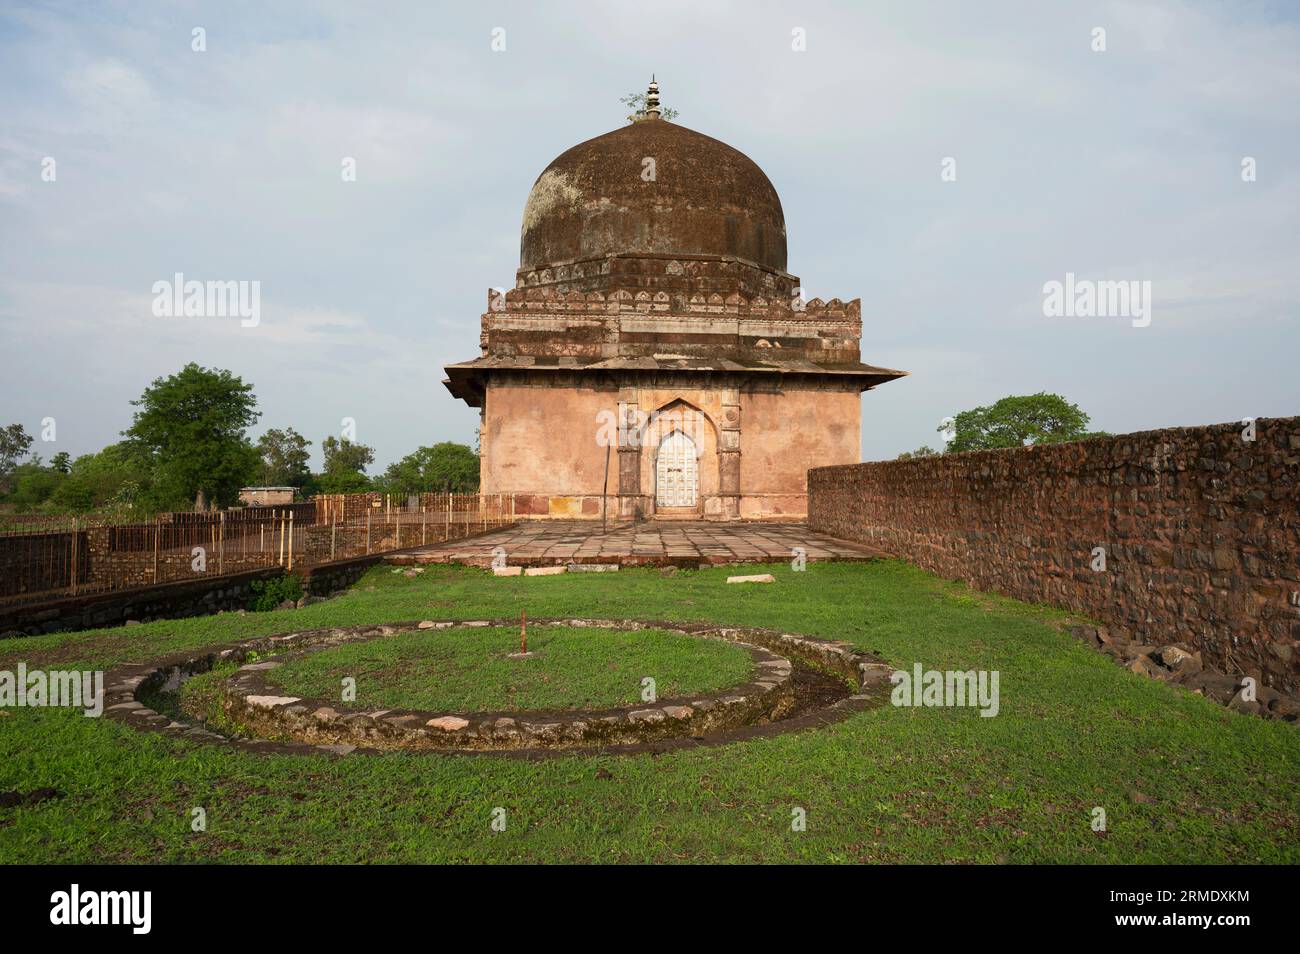 The tomb of Roza of Khadija Bibi located in Mandu, Madhya Pradesh, India Stock Photo